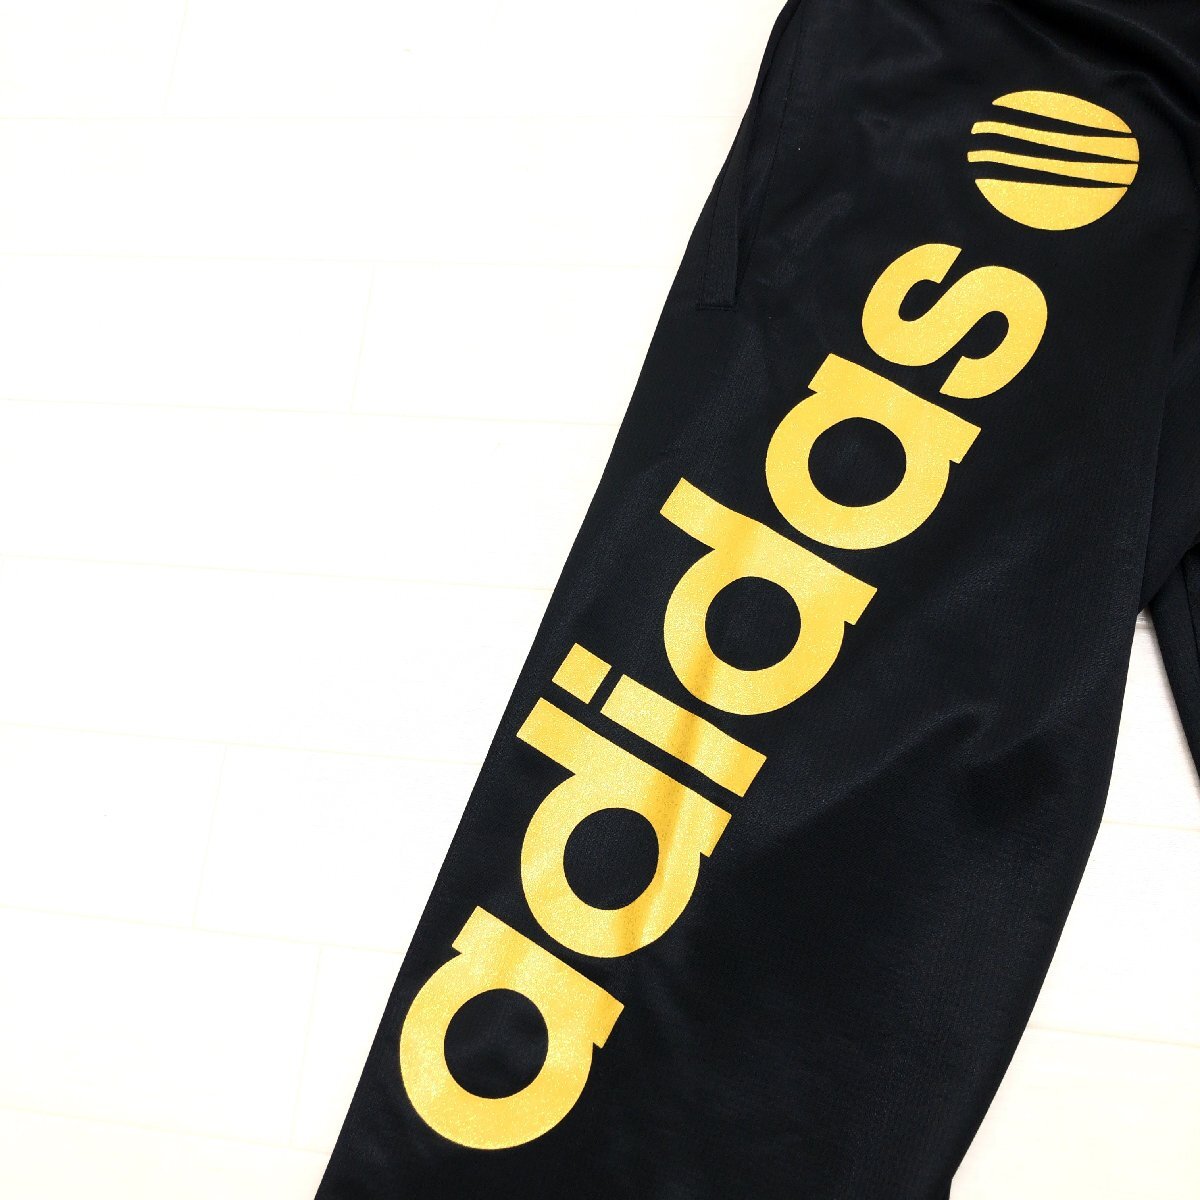 adidas NEO Adidas Logo вышивка Layered способ джерси укороченные брюки L чёрный × золотой черный Gold . пот скорость . dry внутренний стандартный товар джентльмен 